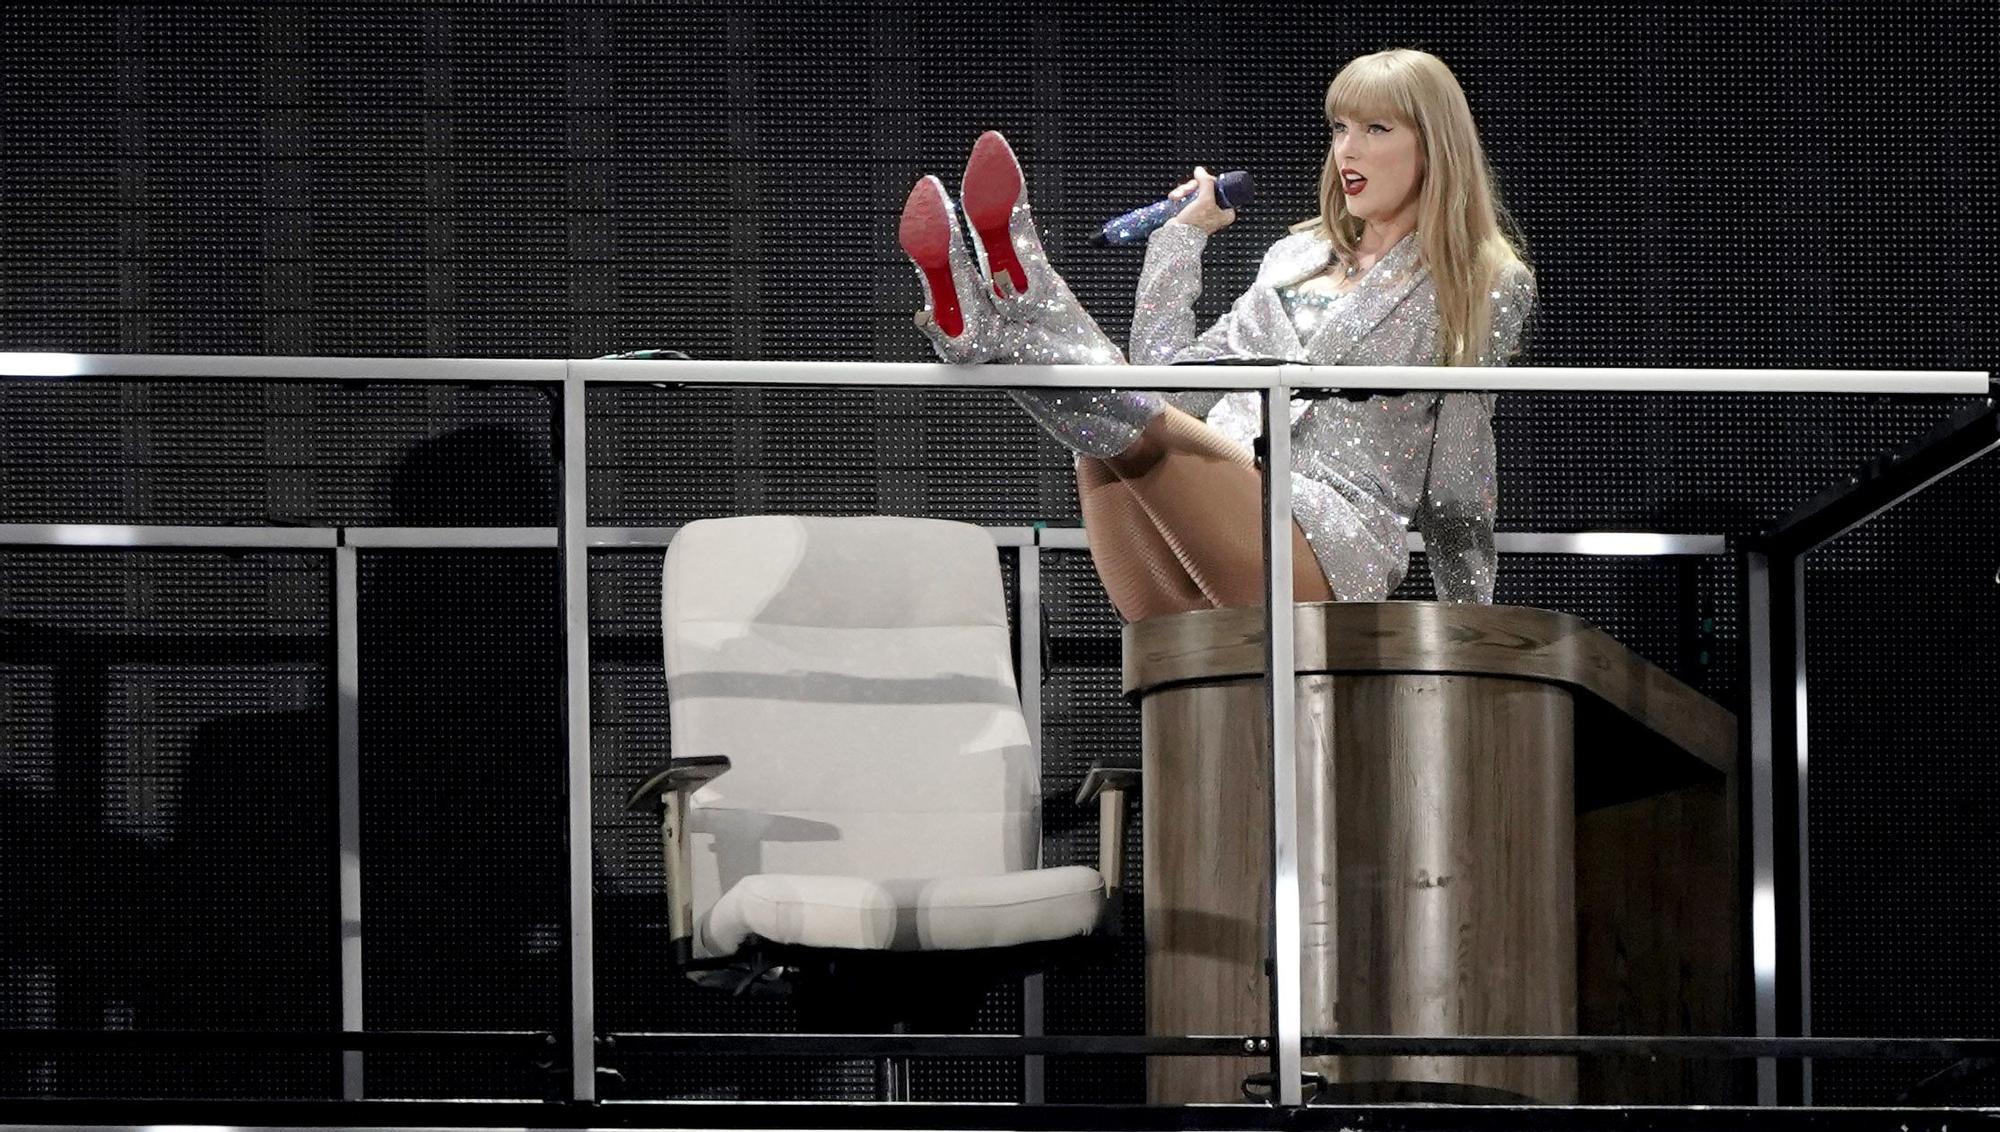 El concierto de Taylor Swift en Madrid, en imágenes